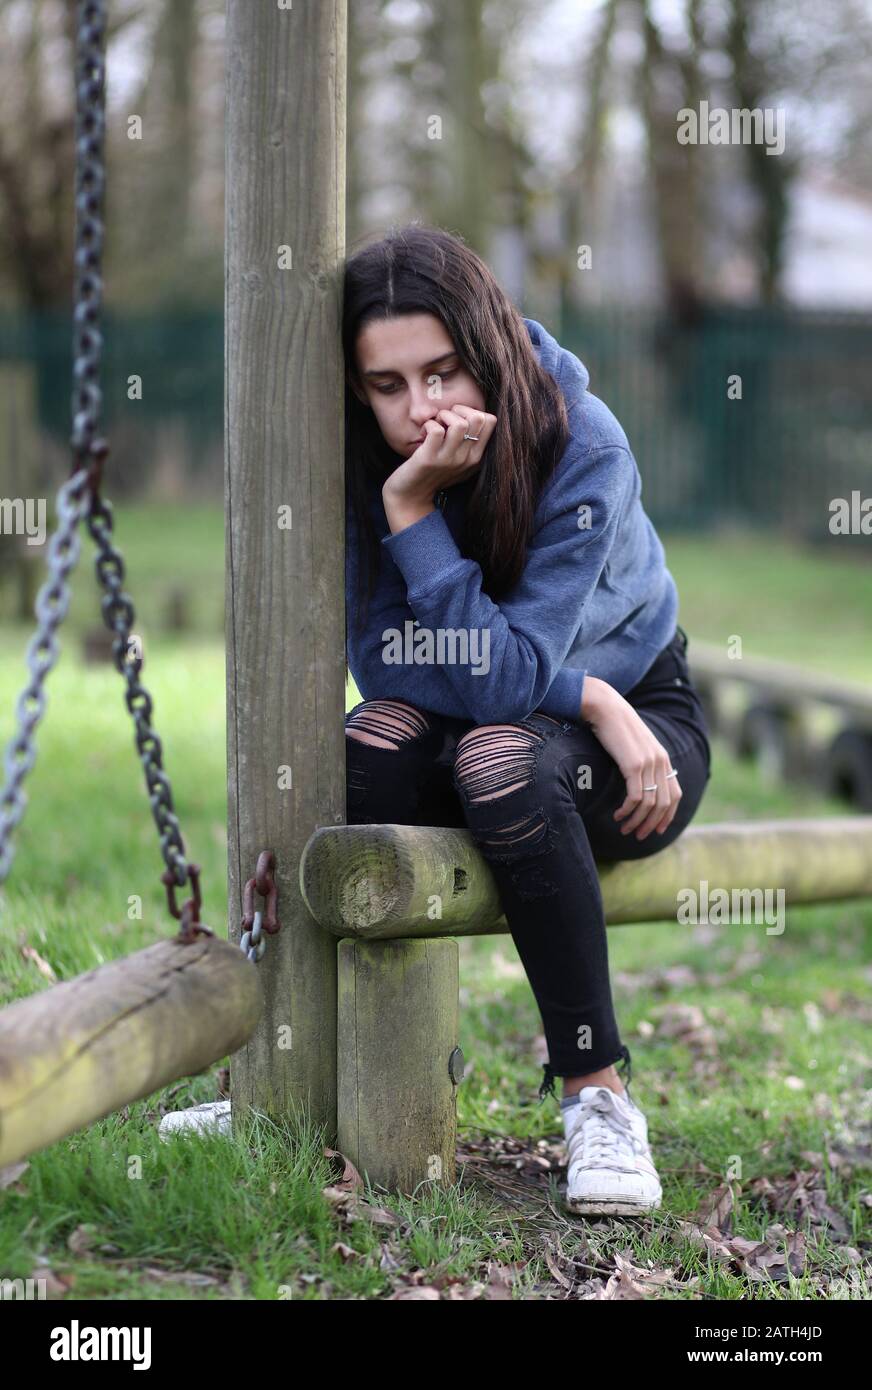 Bild VOM MODELL eines Teenager-Mädchens, das Anzeichen von psychischen Problemen zeigt. PA Foto. Bilddatum: Sonntag, 2. Februar 2020. Fotogutschrift sollte lauten: Gareth Fuller/PA Wire Stockfoto